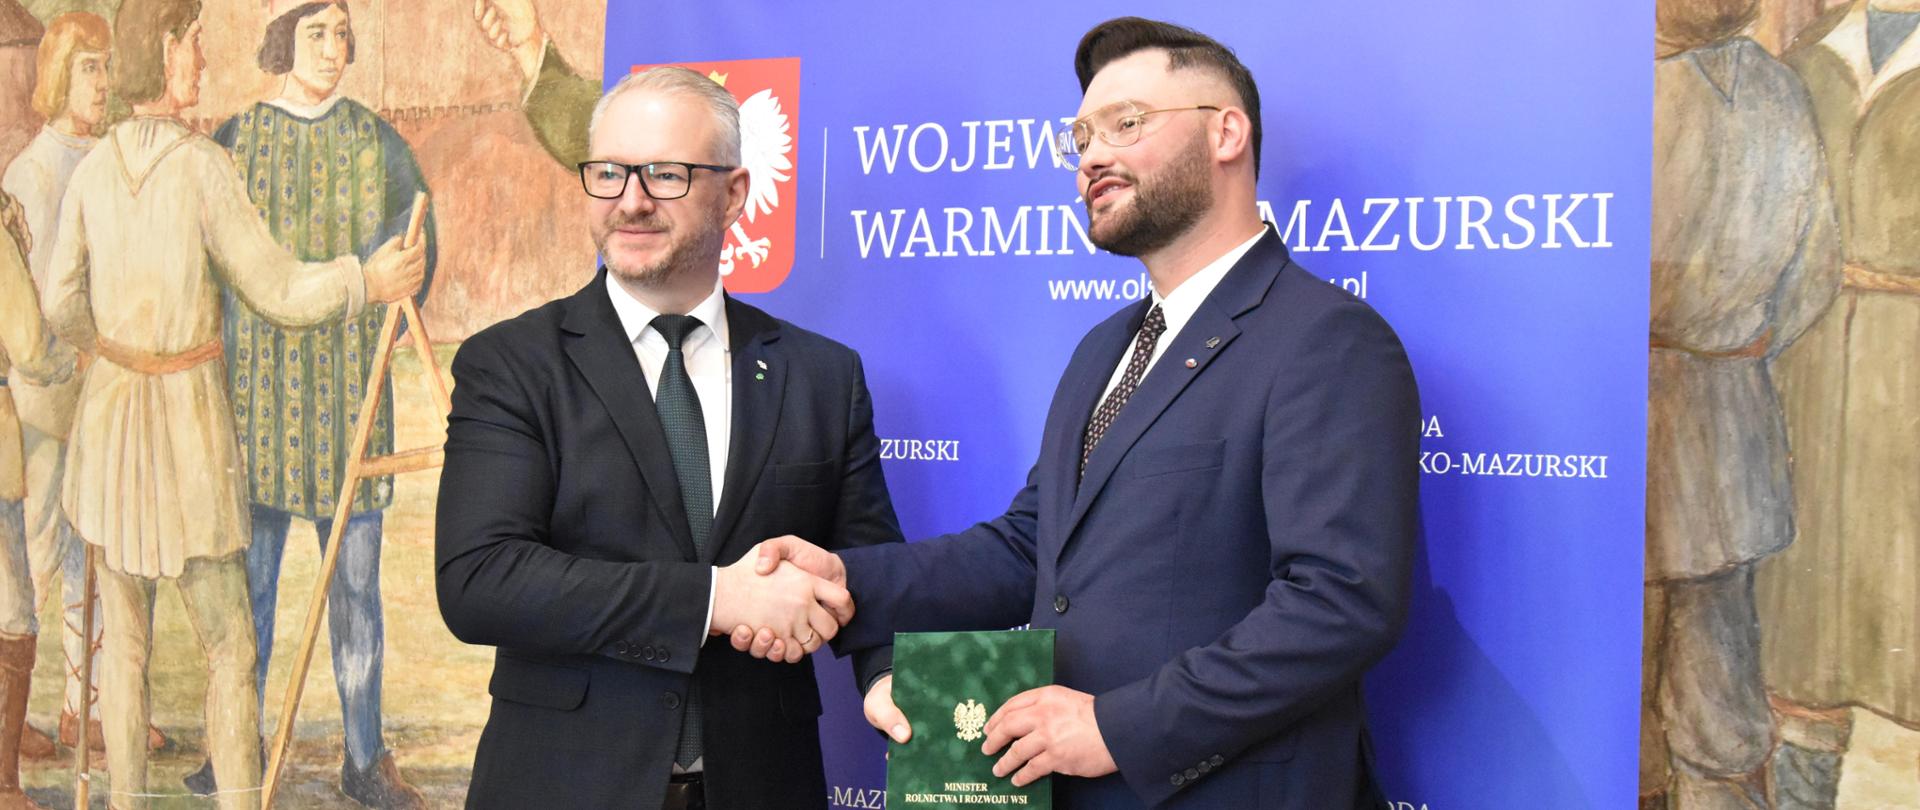 Powołanie nowego Dyrektora Warmińsko-Mazurskiego Ośrodka Doradztwa Rolniczego w Olsztynie Pana Mateusza Cygana